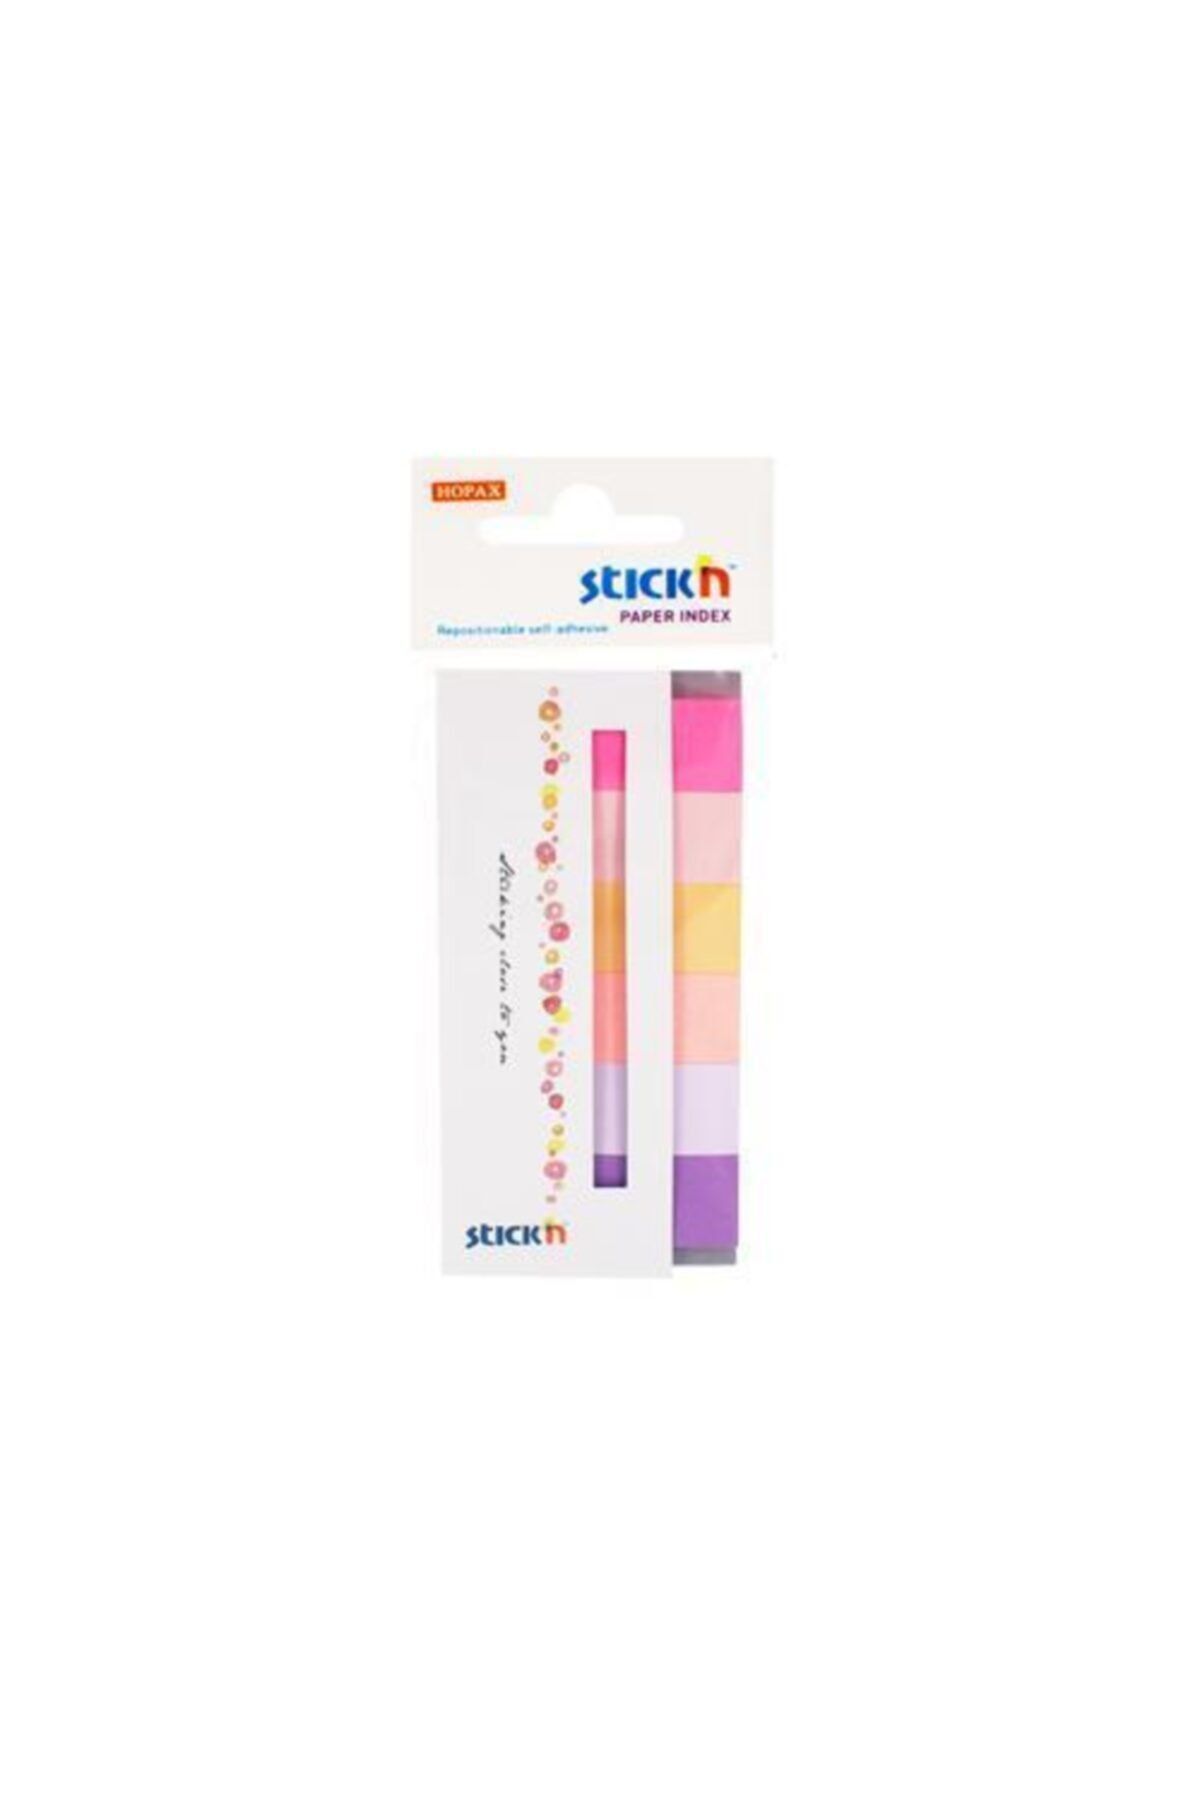 Gıpta Hopax Stickn 21595 Indeks (işaret Bandı) Yapışkanlı 180 Yaprak 50x20 Mm Son Bahar Rengi 6 Renk 0012759215951